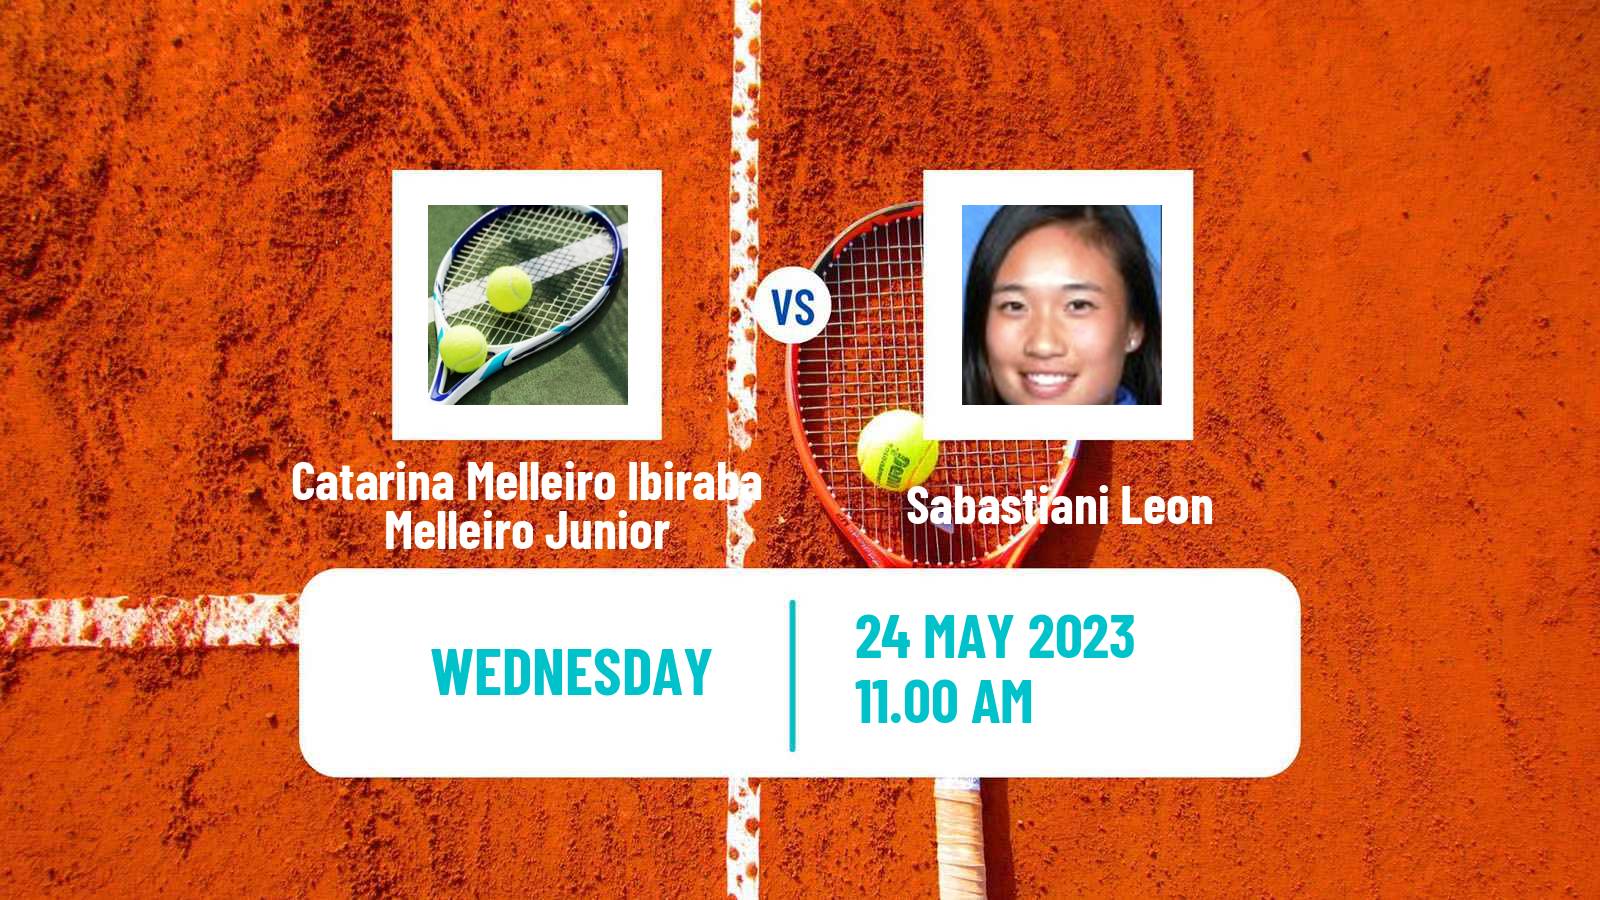 Tennis ITF W15 Recife Women Catarina Melleiro Ibiraba Melleiro Junior - Sabastiani Leon